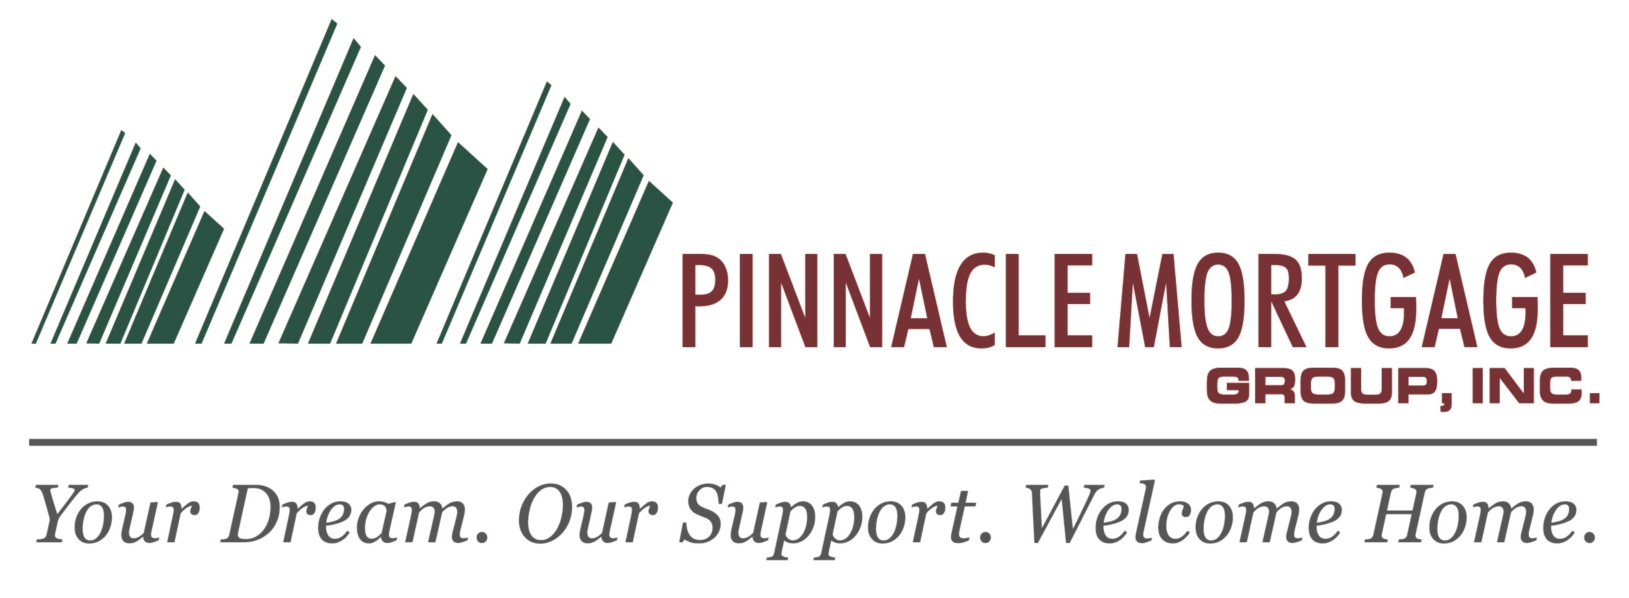 Pinnacle Mortgage Group Inc Company Logo